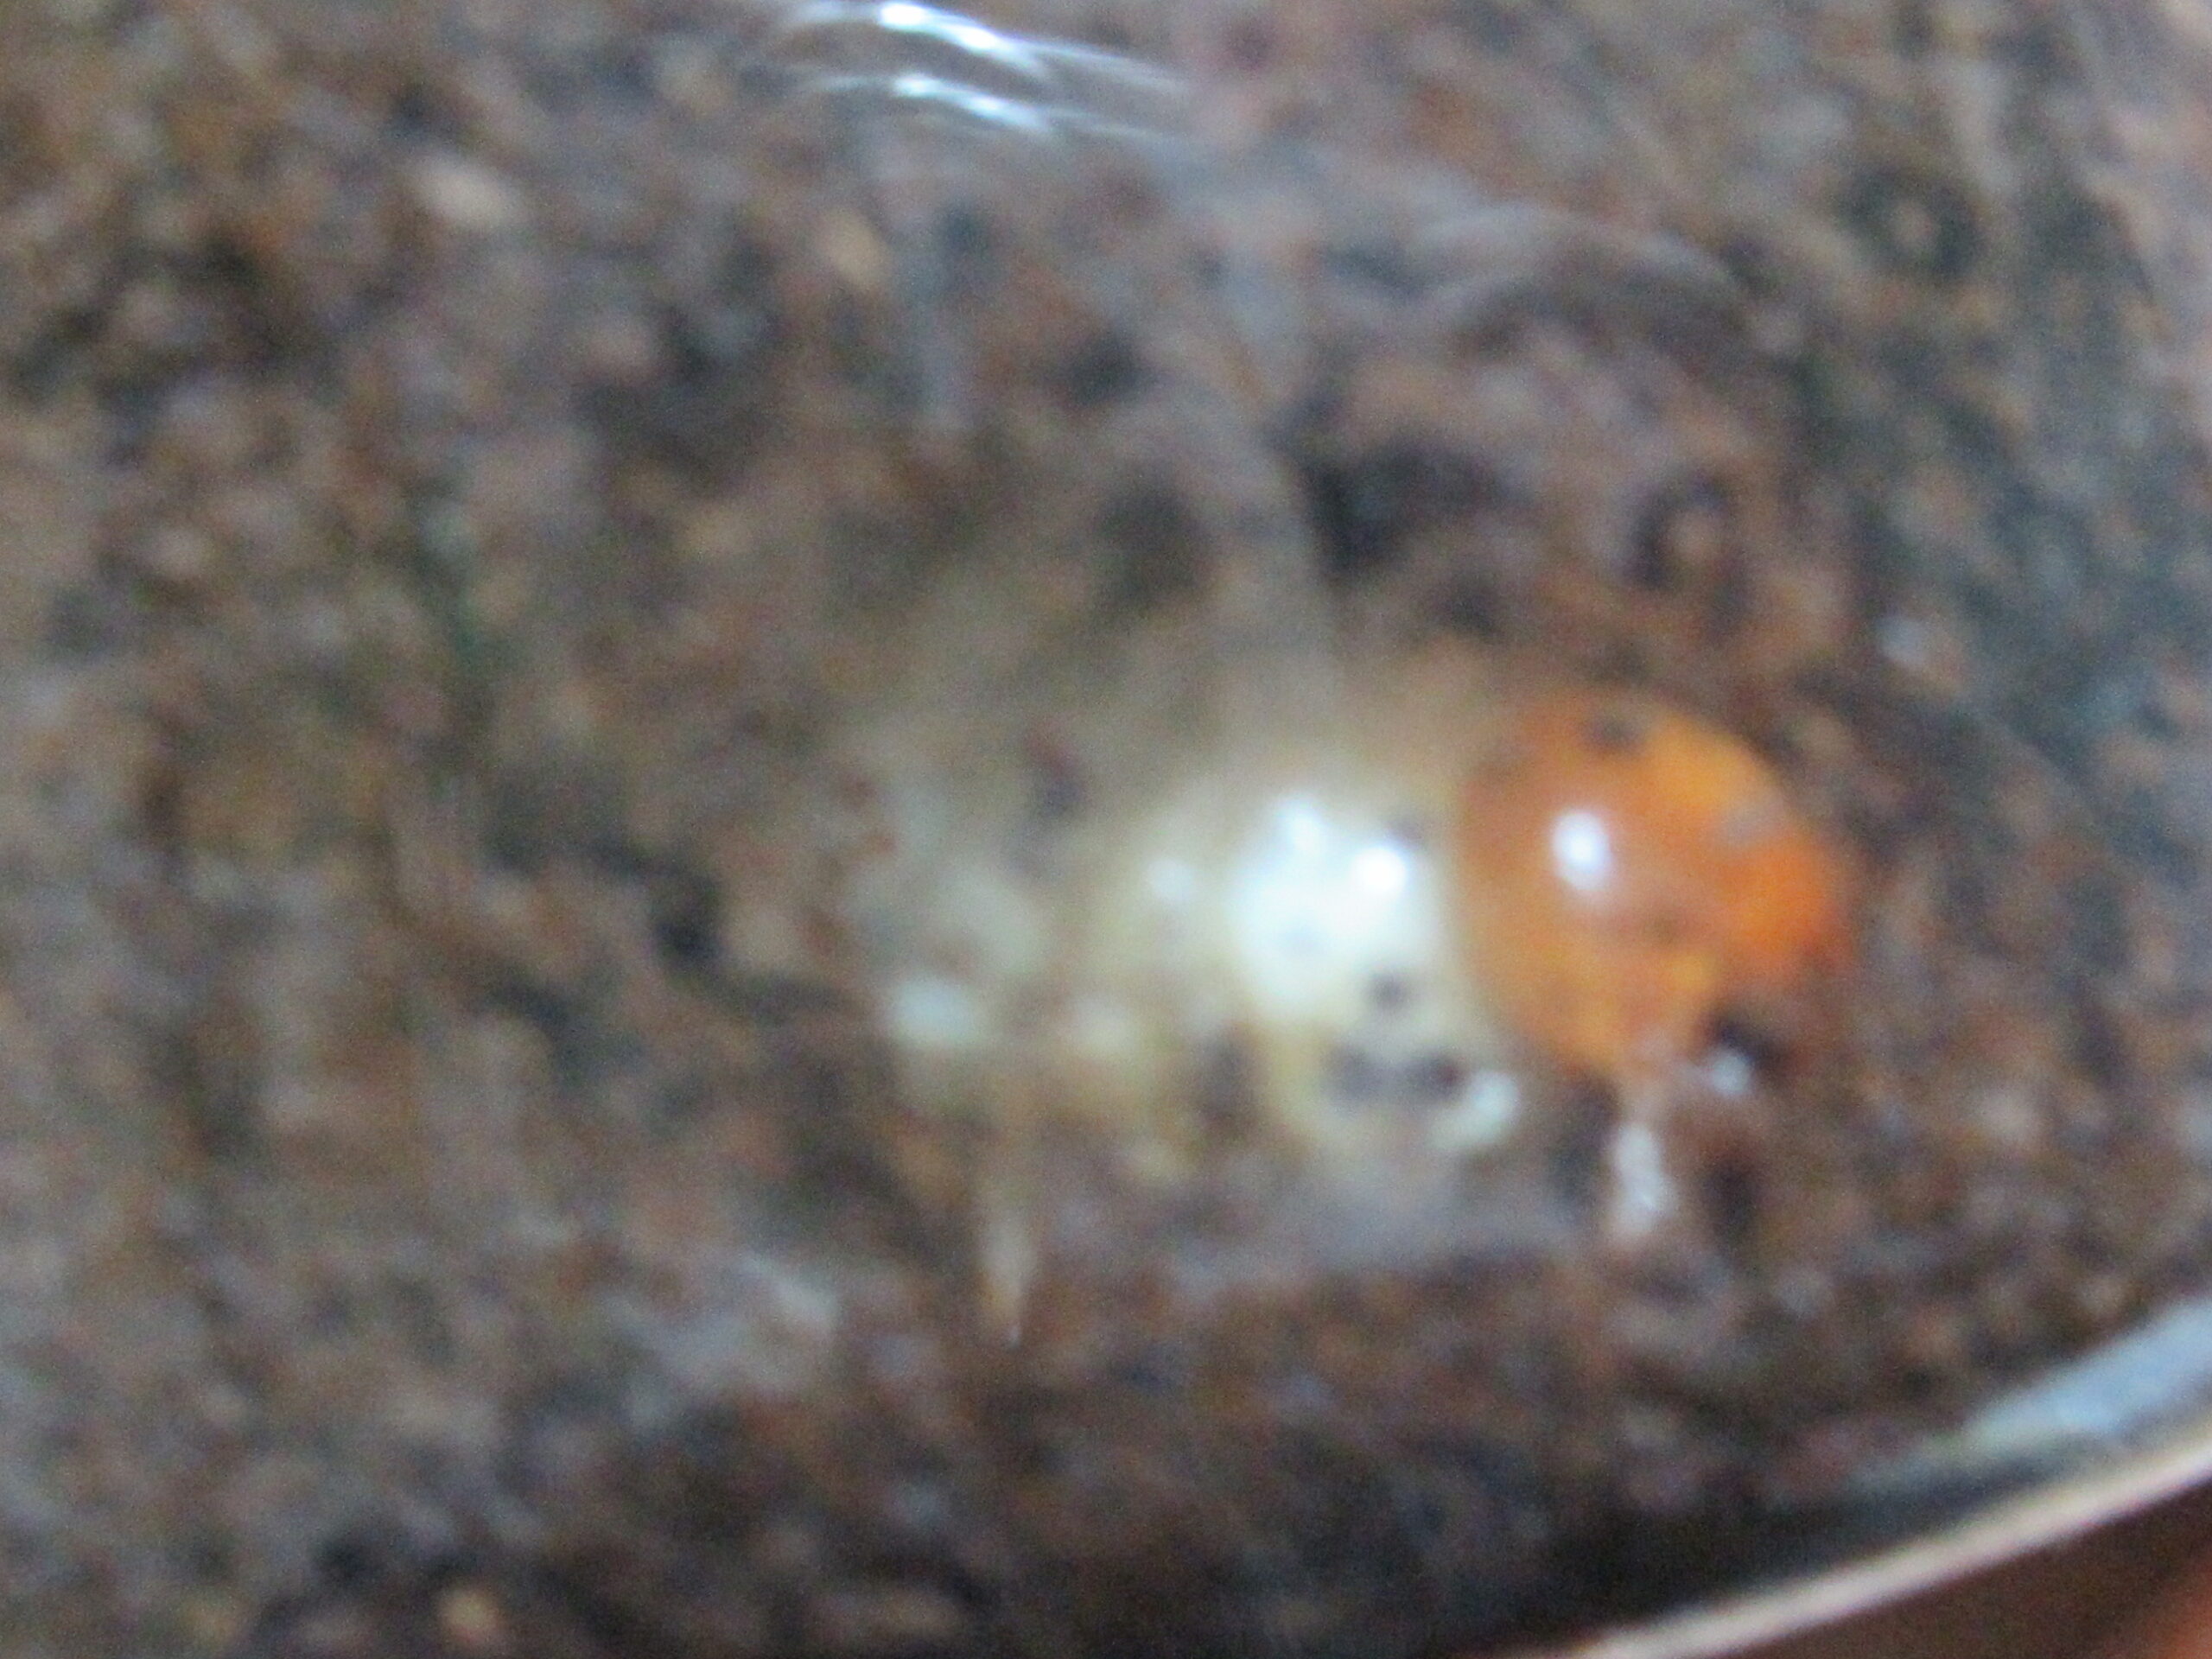 放置飼育しているヤエヤママルバネ幼虫の様子をケースの外から覗いてみた@2021年4月